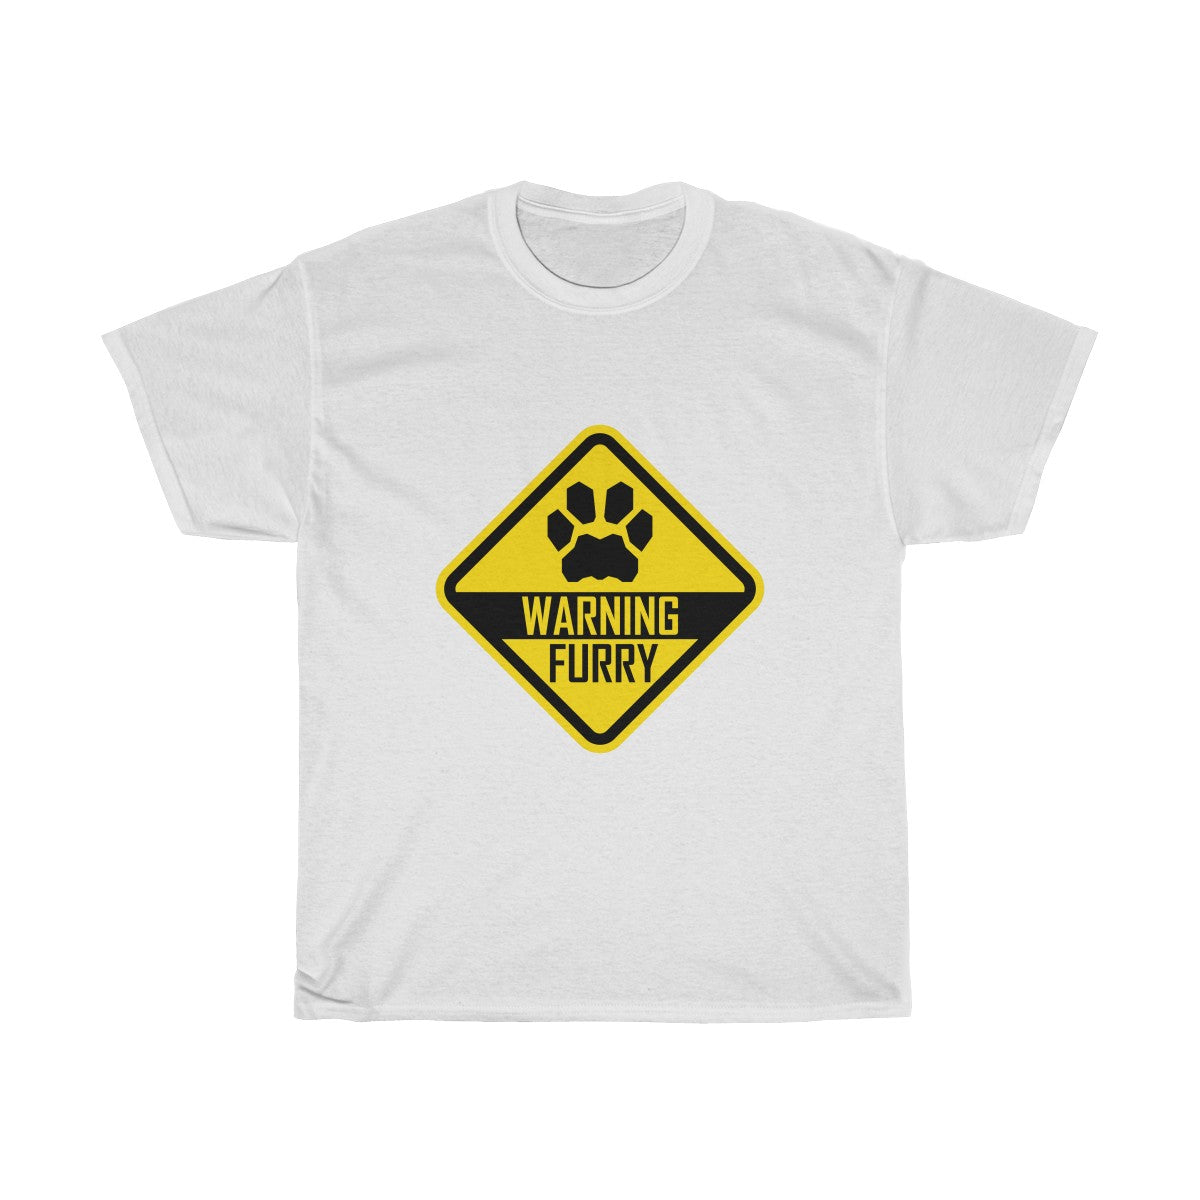 Warning Feline - T-Shirt T-Shirt Wexon White S 